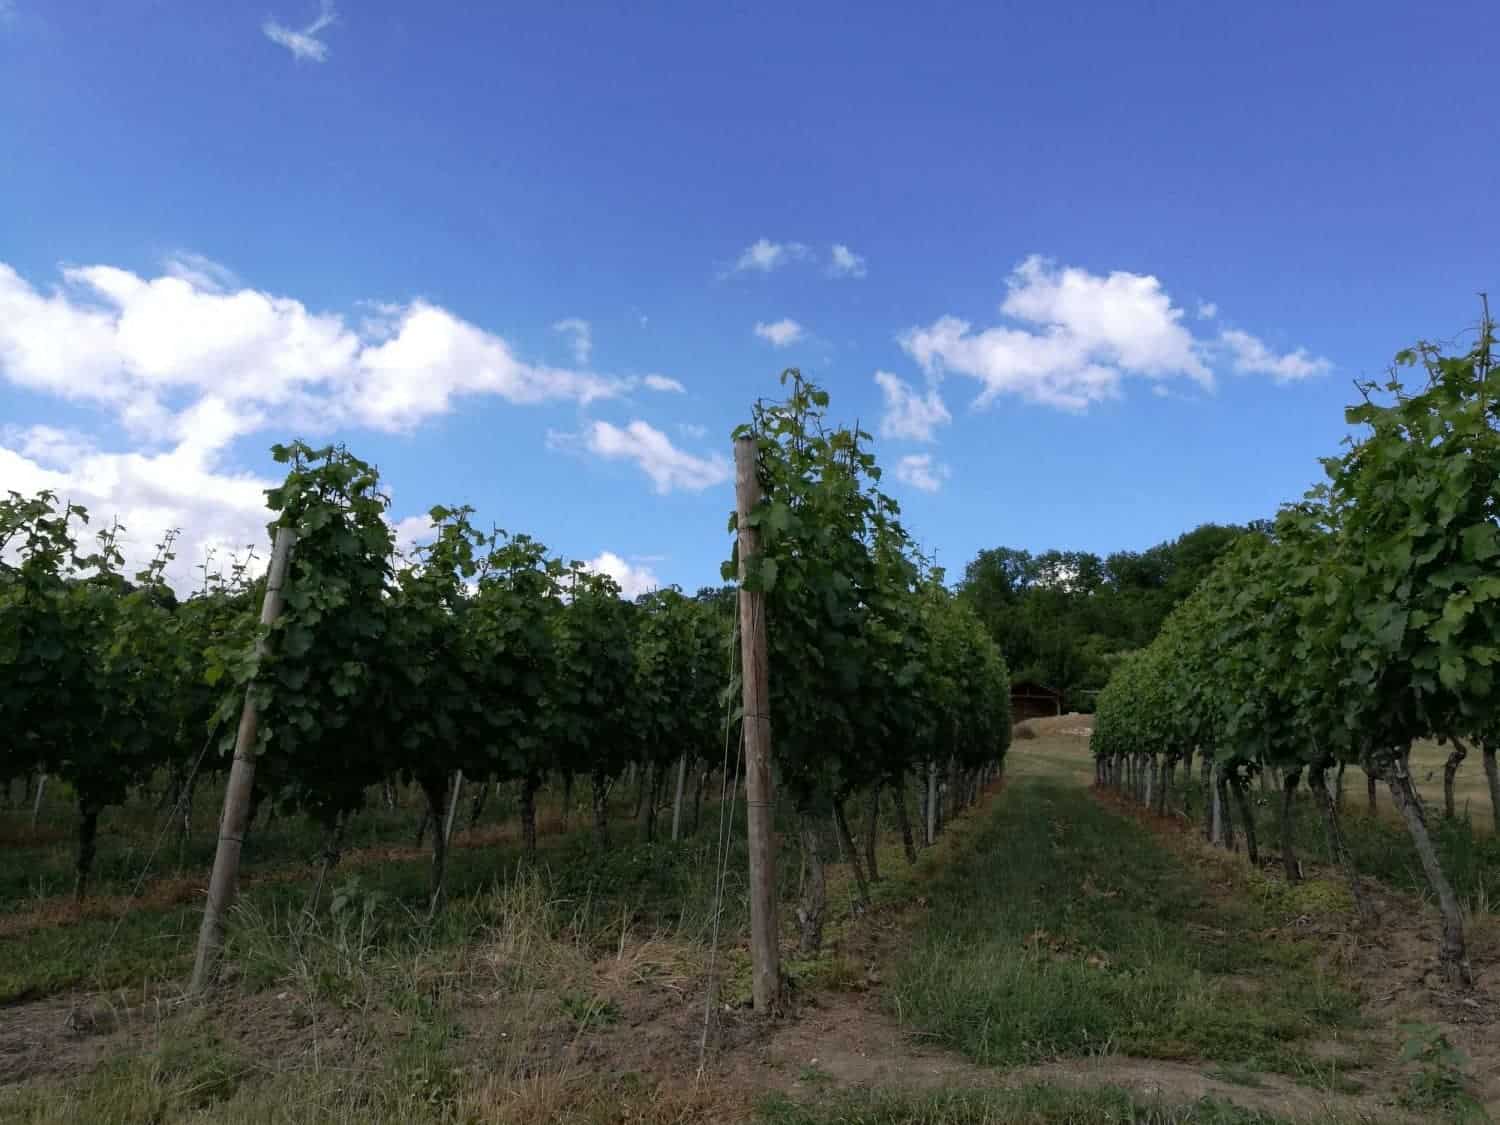 Thüringen wijngaard